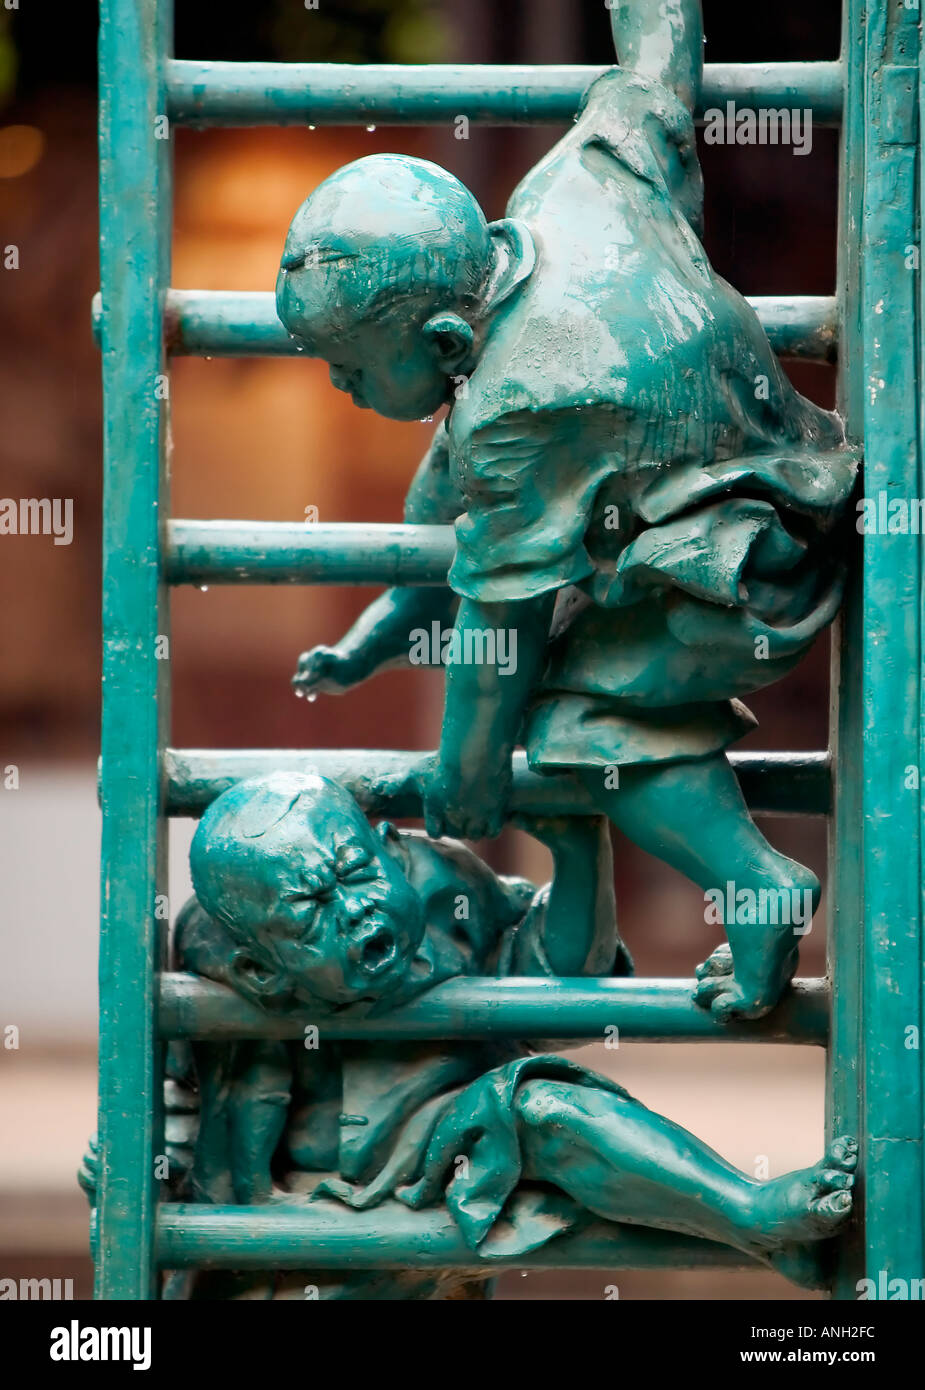 Un metallo verde statua di due bambini che giocano su una scala, uno con la loro testa bloccata tra i pioli e gli altri cercando di aiutare, Guangzhou, Cina Foto Stock